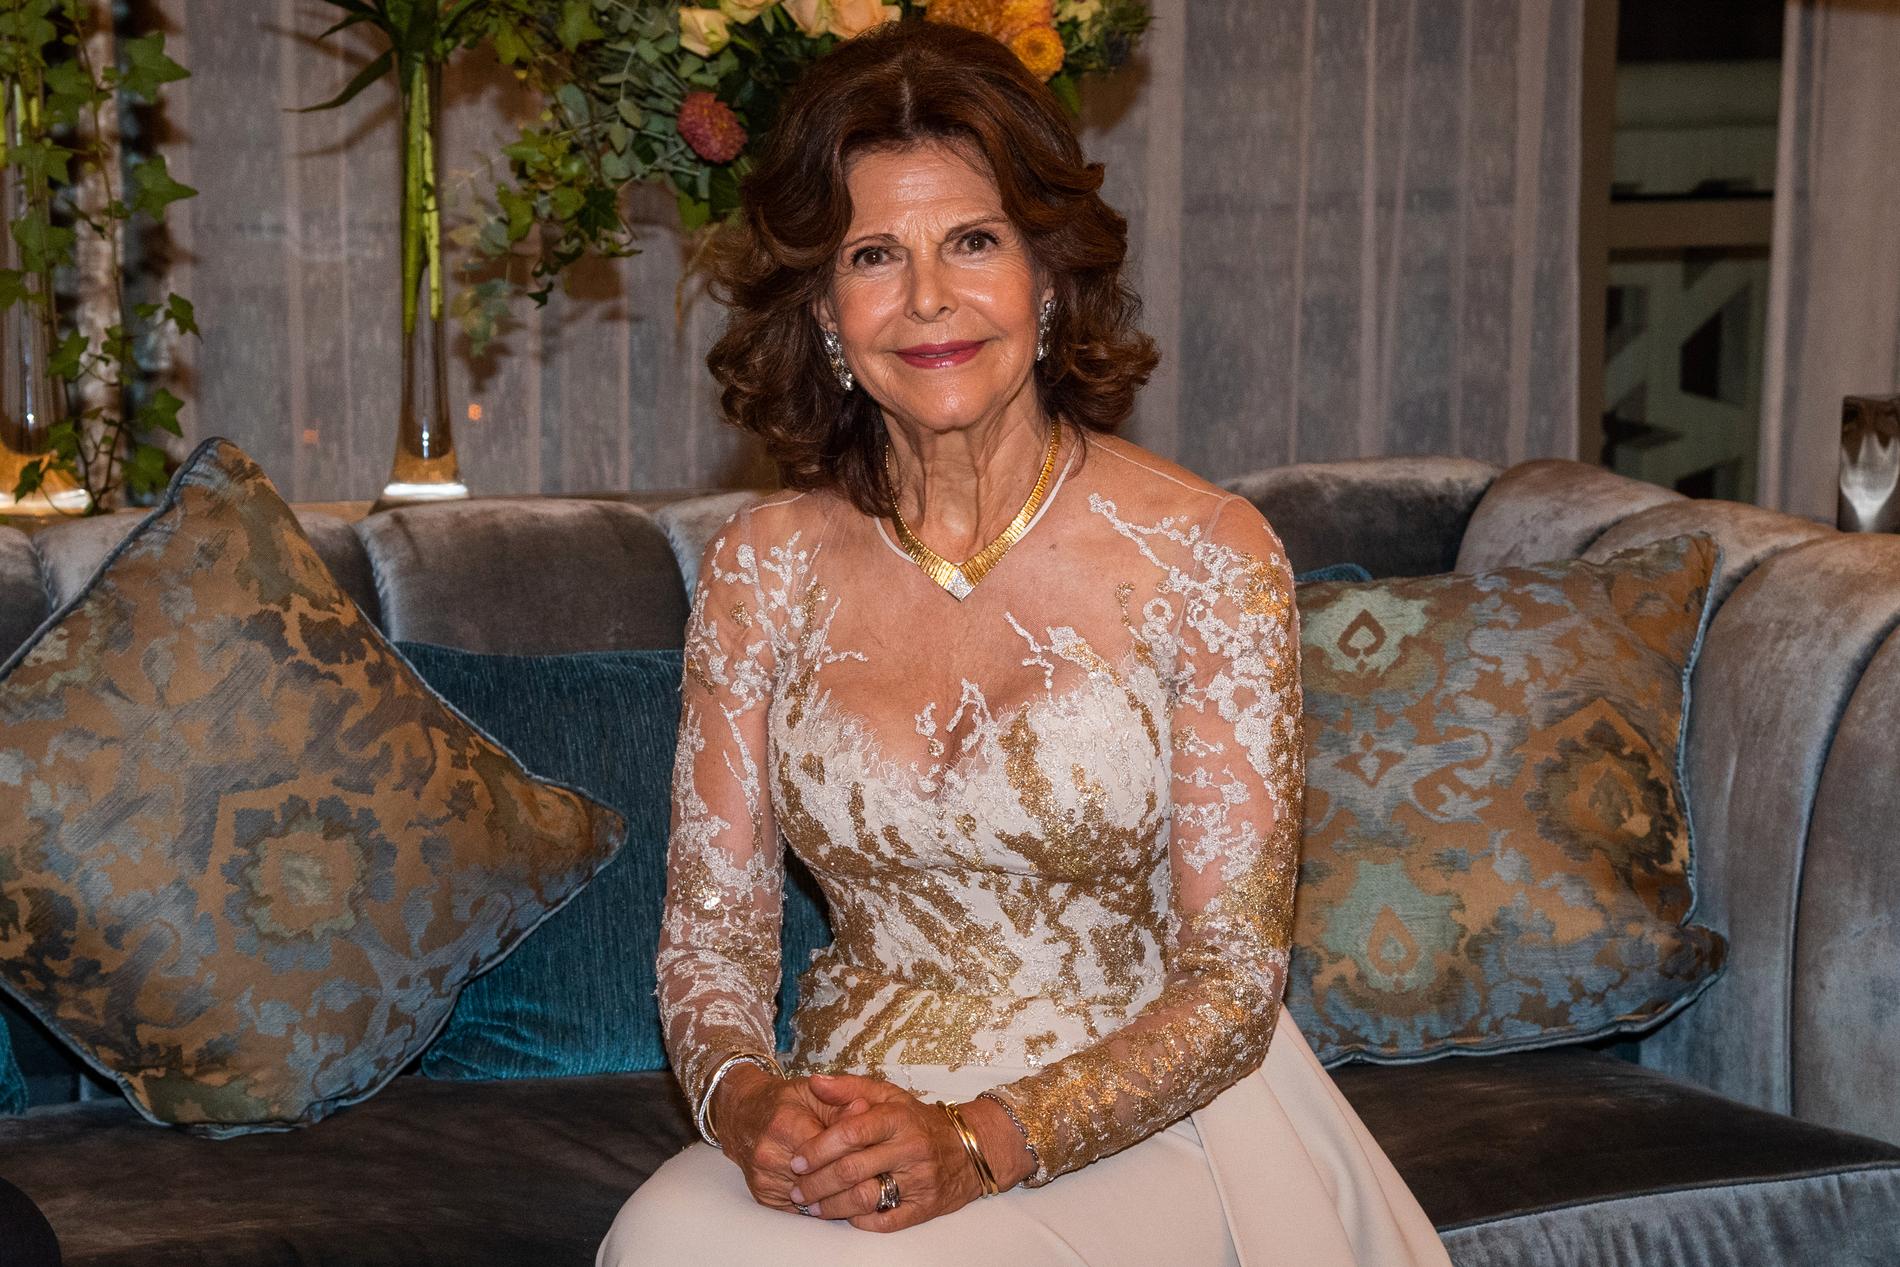 Den spektakulära klänningen, som drottning Silvia bar vid mötet med Libanons premiärminister, är skapad av landets mest kände modedesigner Elie Saab. Kreationen har en urringad överdel av tunn brodyr i vitt och guld.